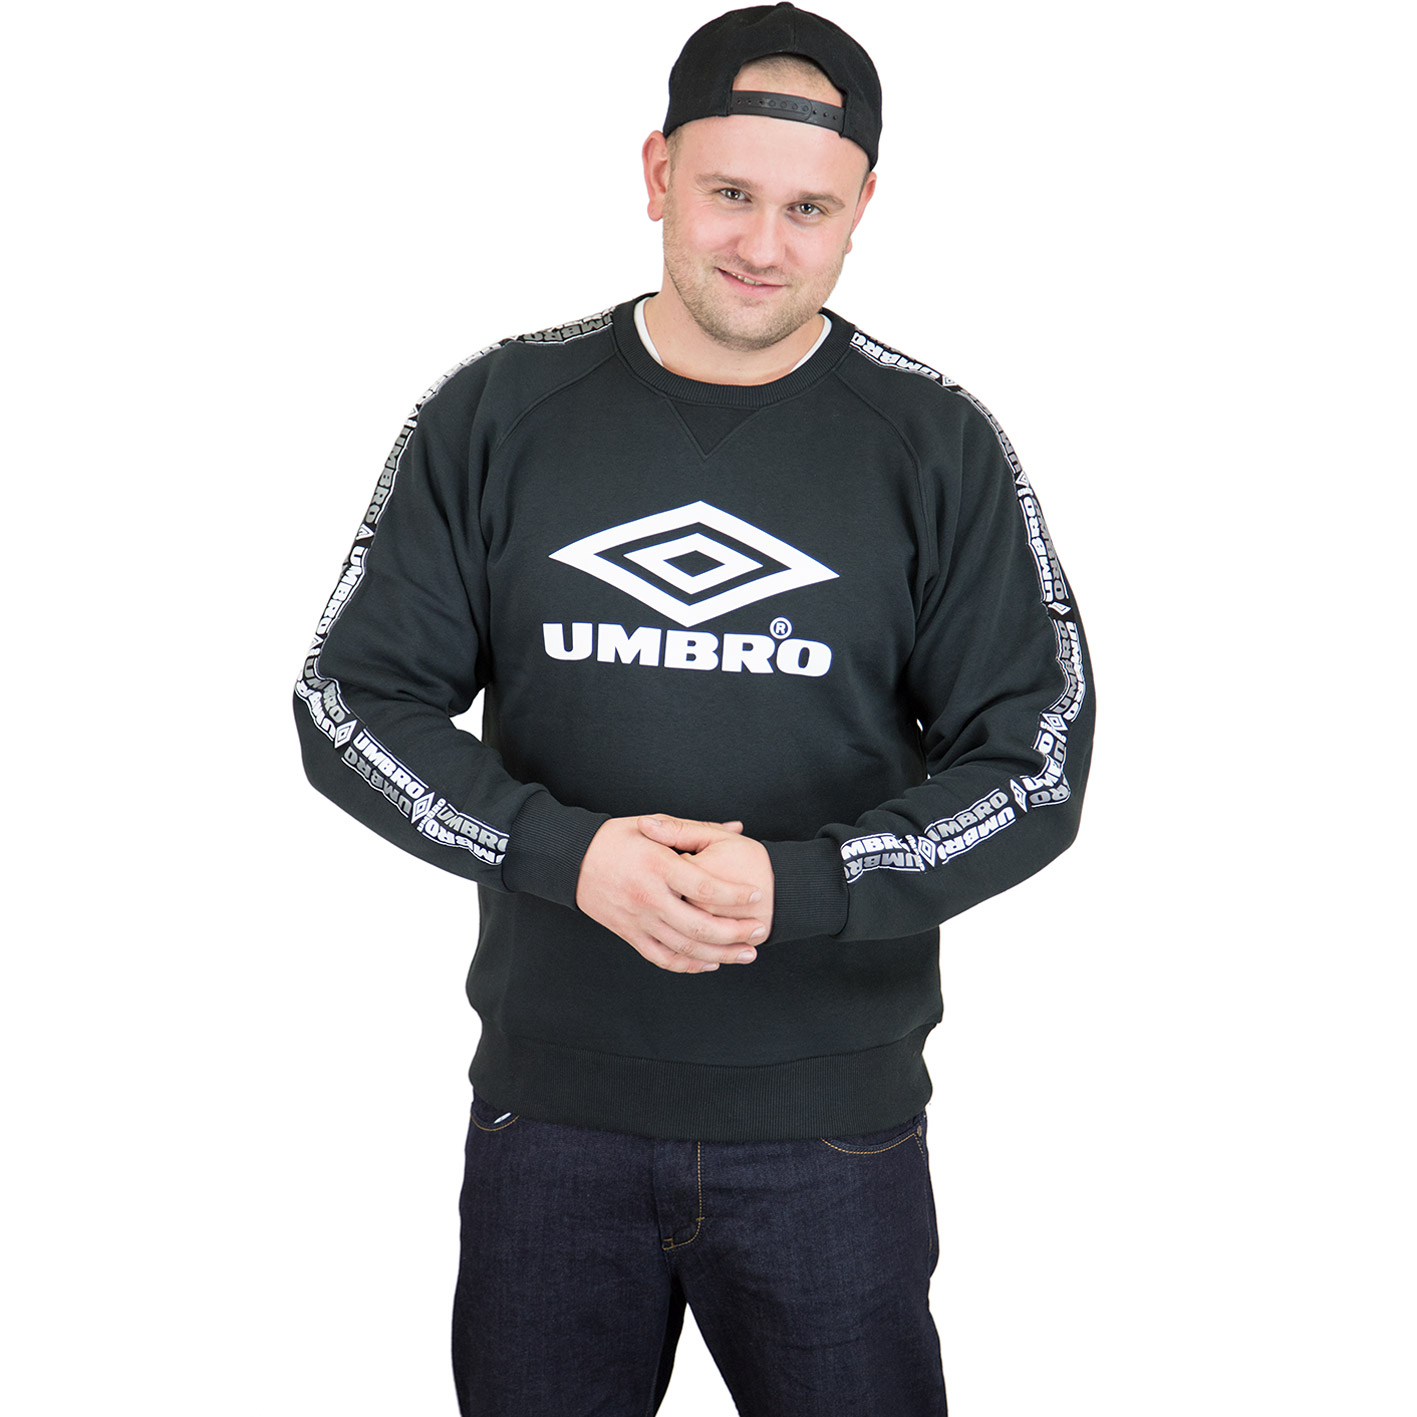 ☆ Umbro Sweatshirt Taped schwarz - hier bestellen!